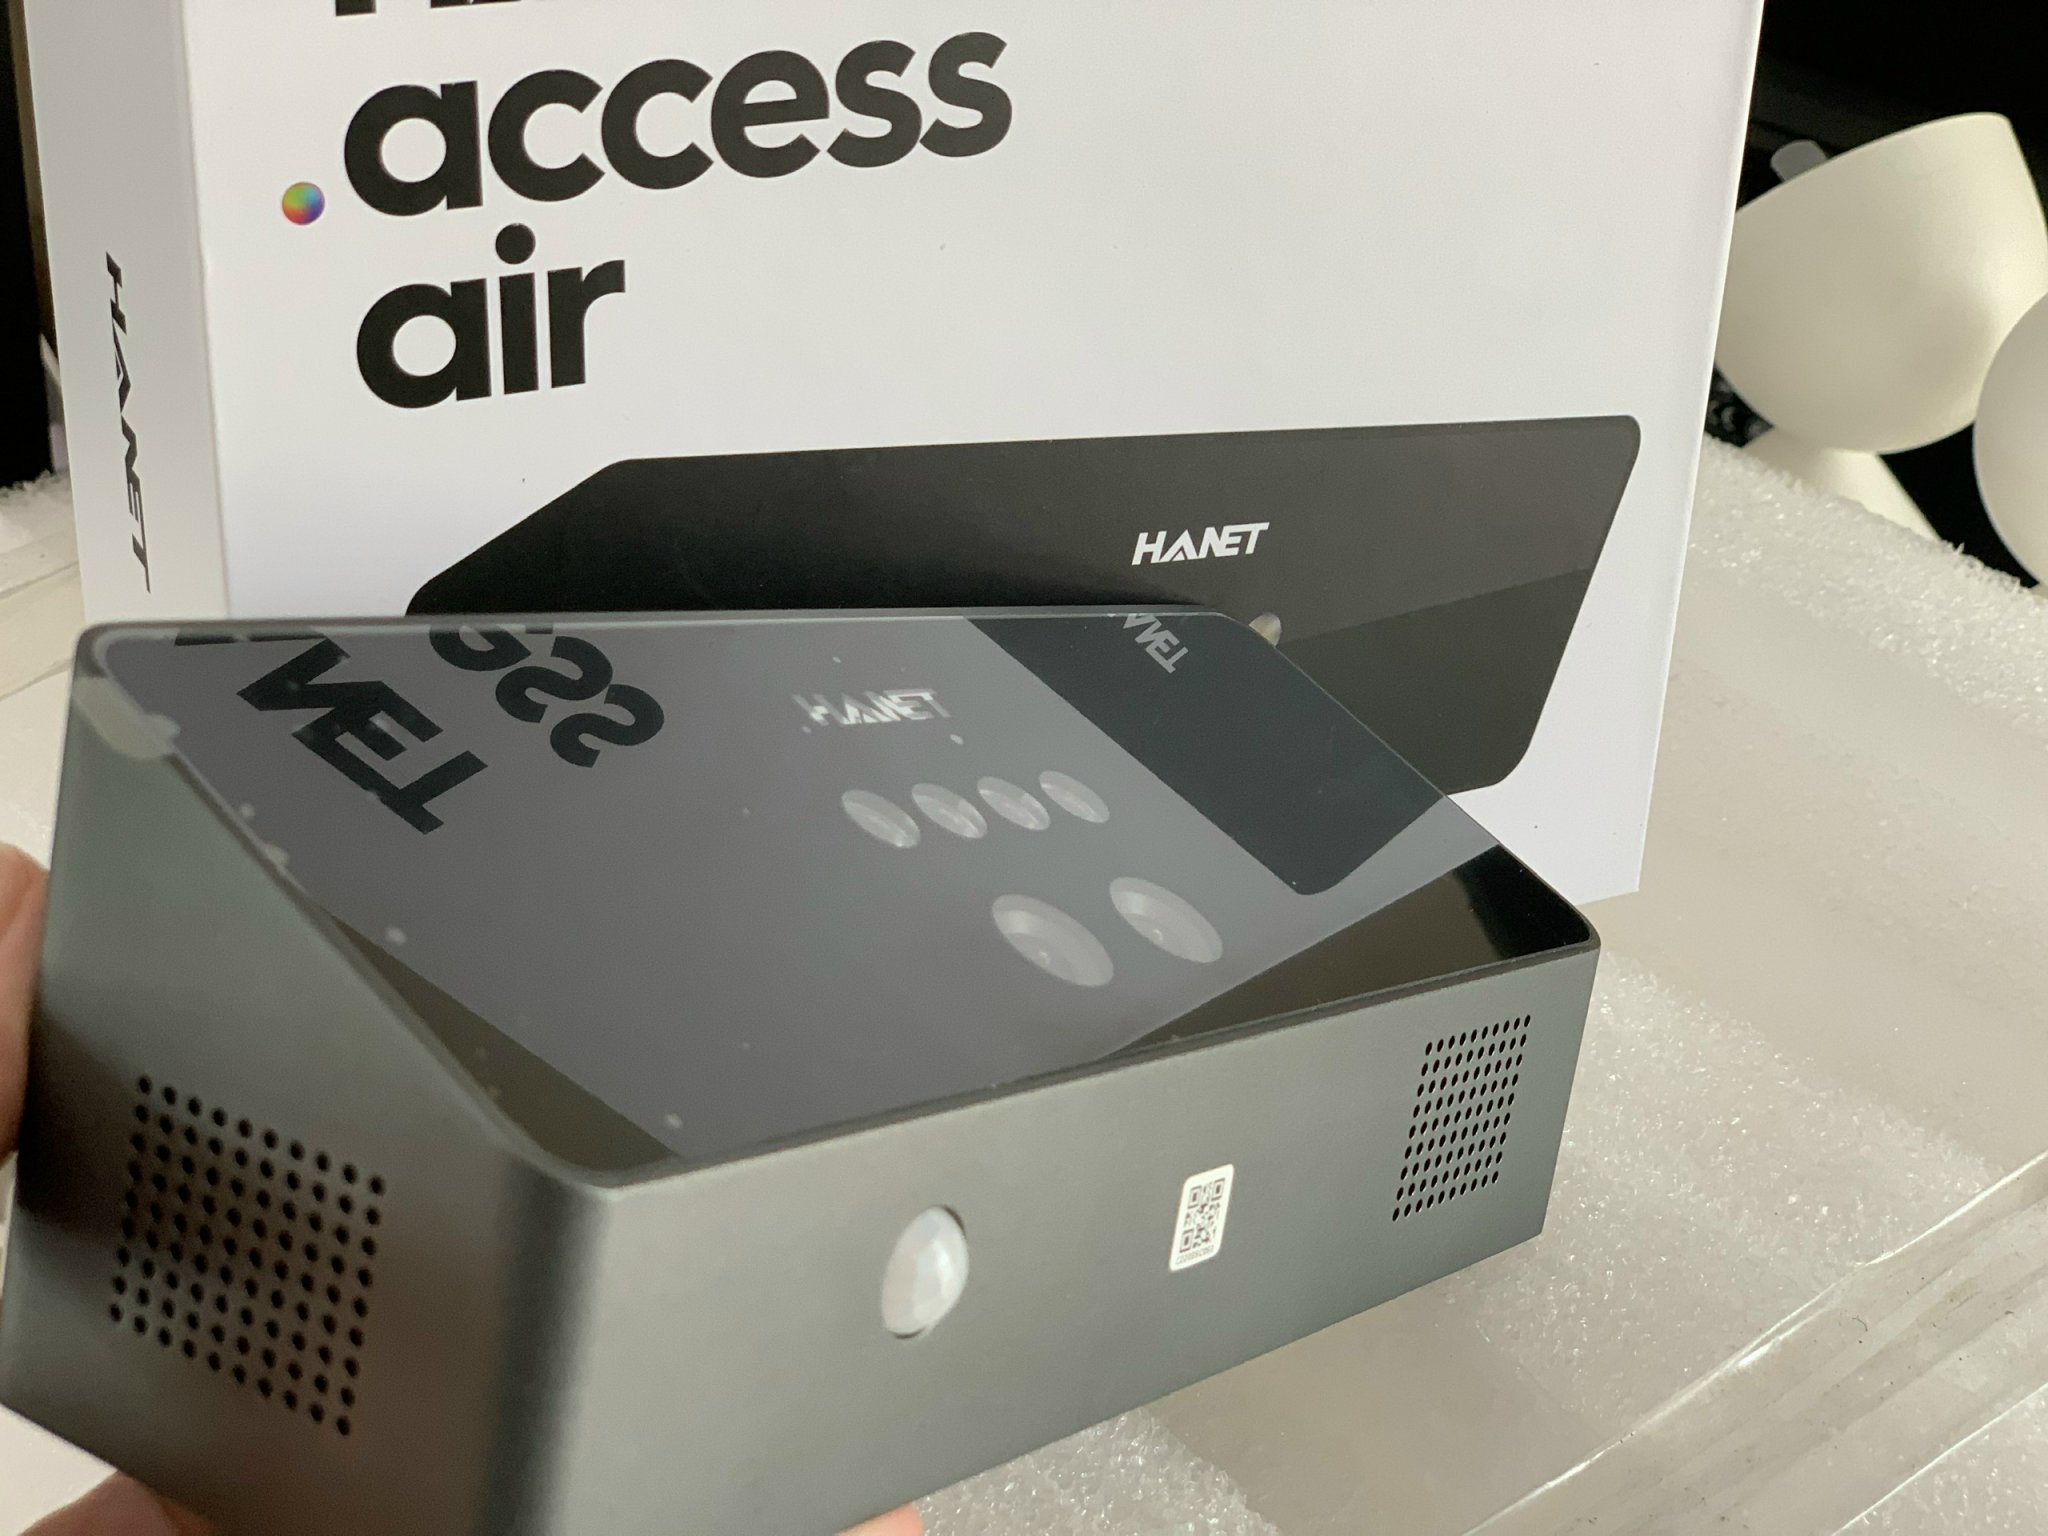 HANET Access Air